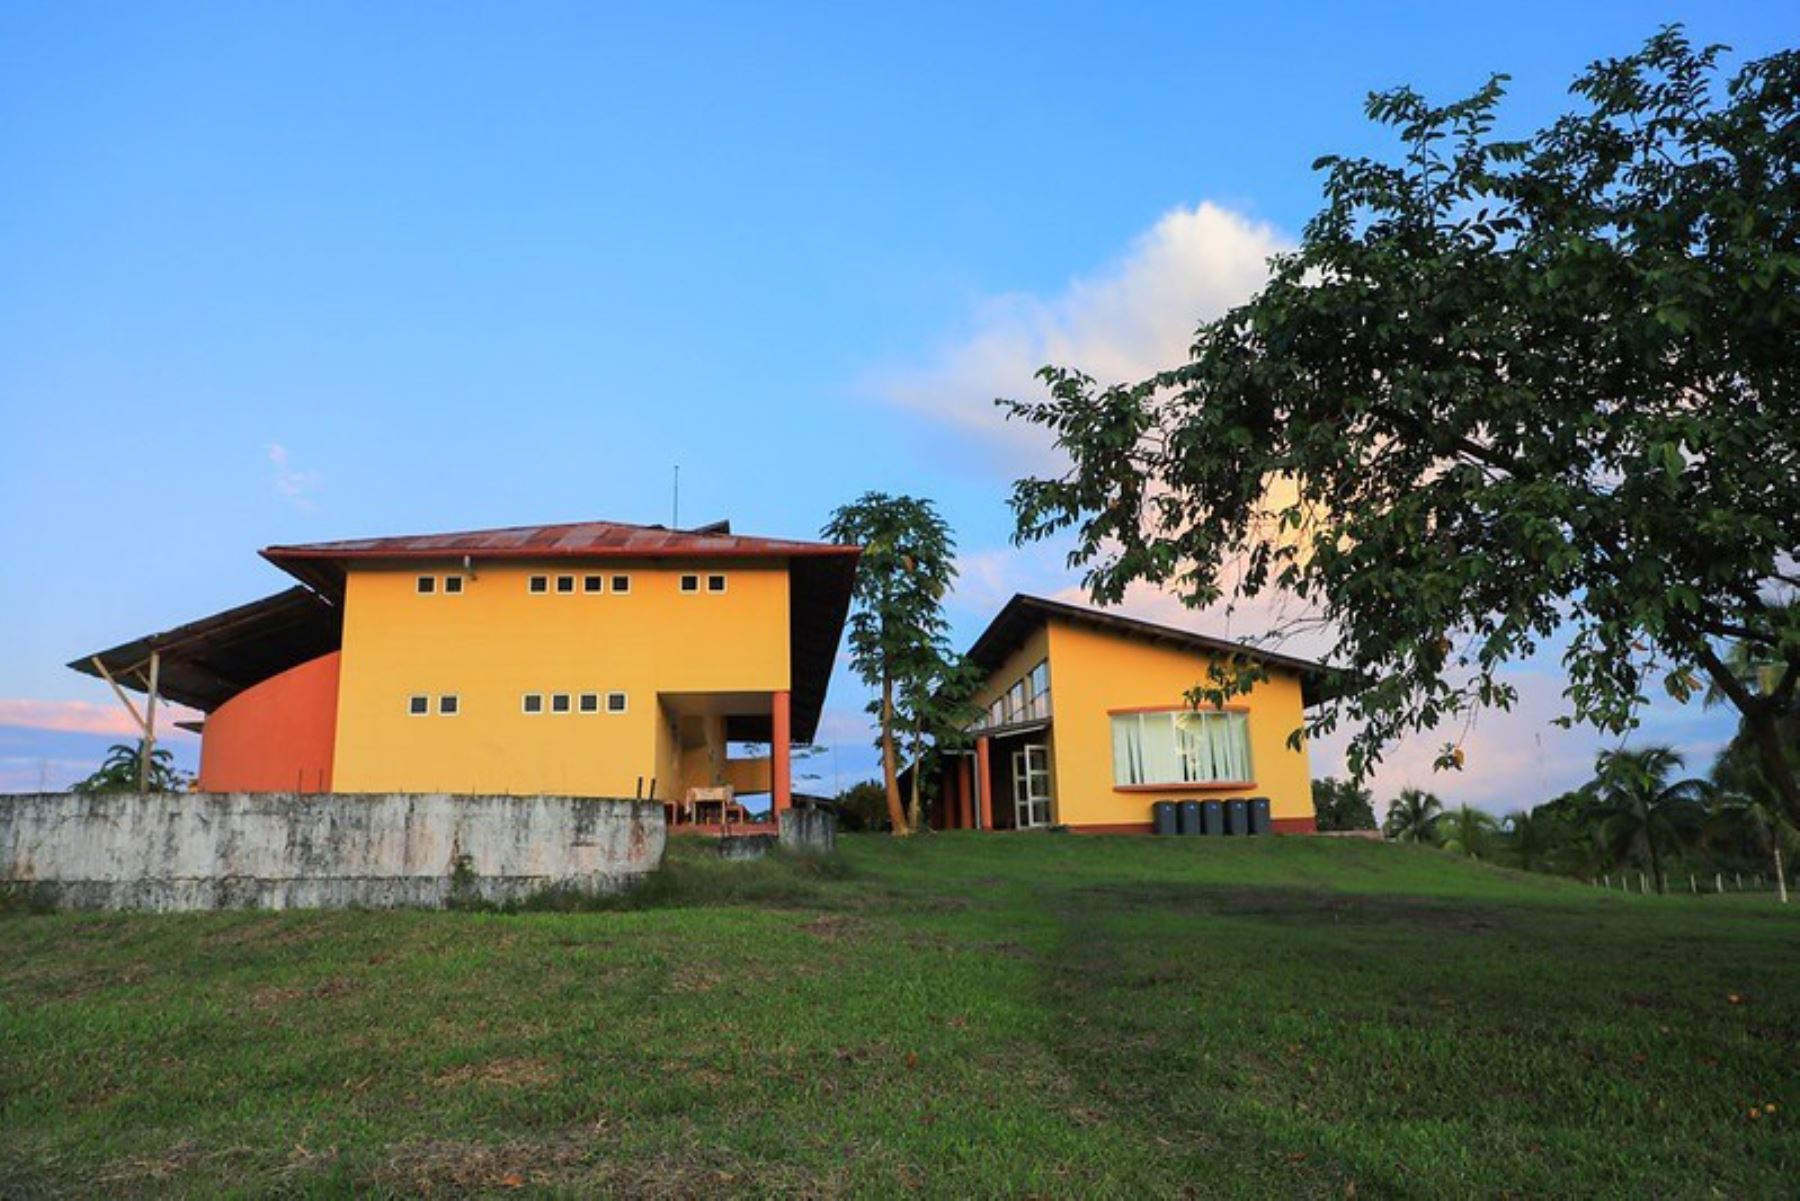 Casa residencial del centro acuícola Nuevo Horizonte de Iquitos, capital de la región Loreto. ANDINA/Difusión